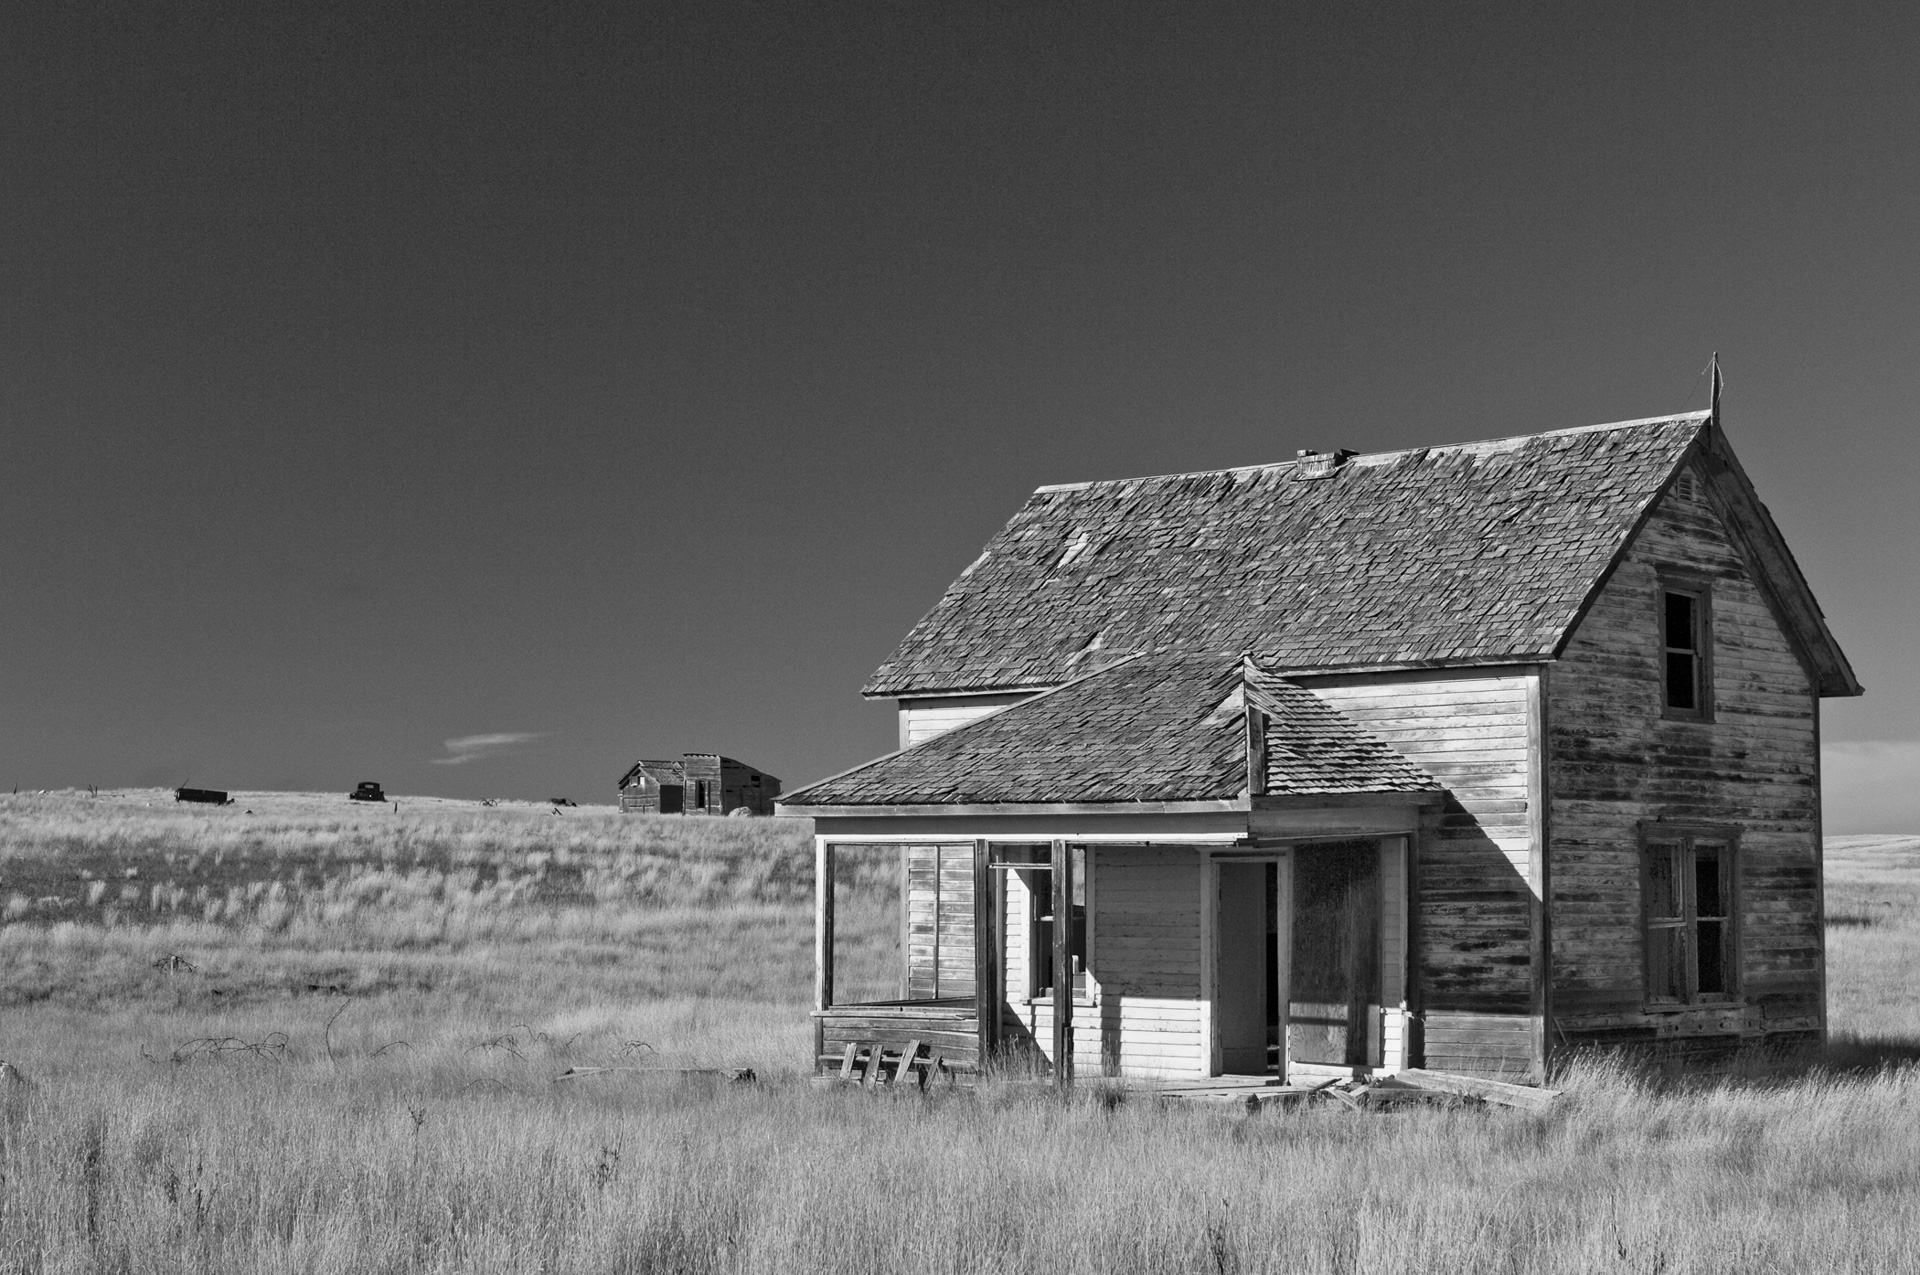 Abandonned homestead